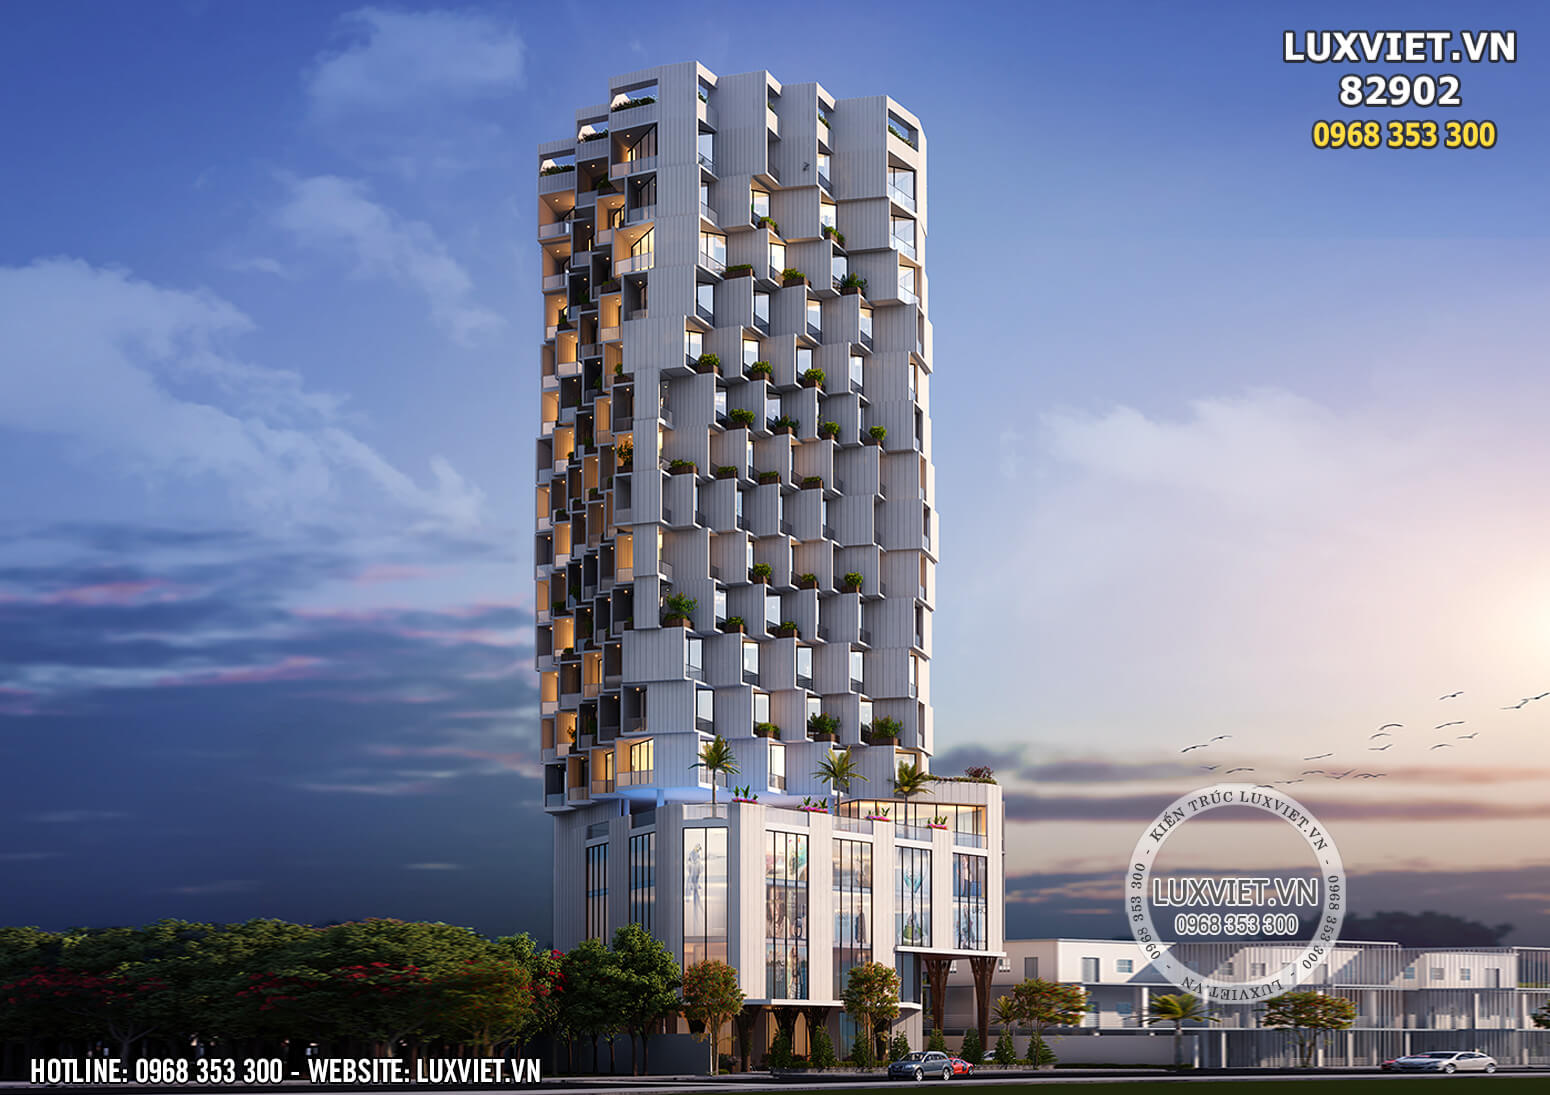 Thiết kế tổ hợp khách sạn 5 sao tại Nha Trang – LV 82902